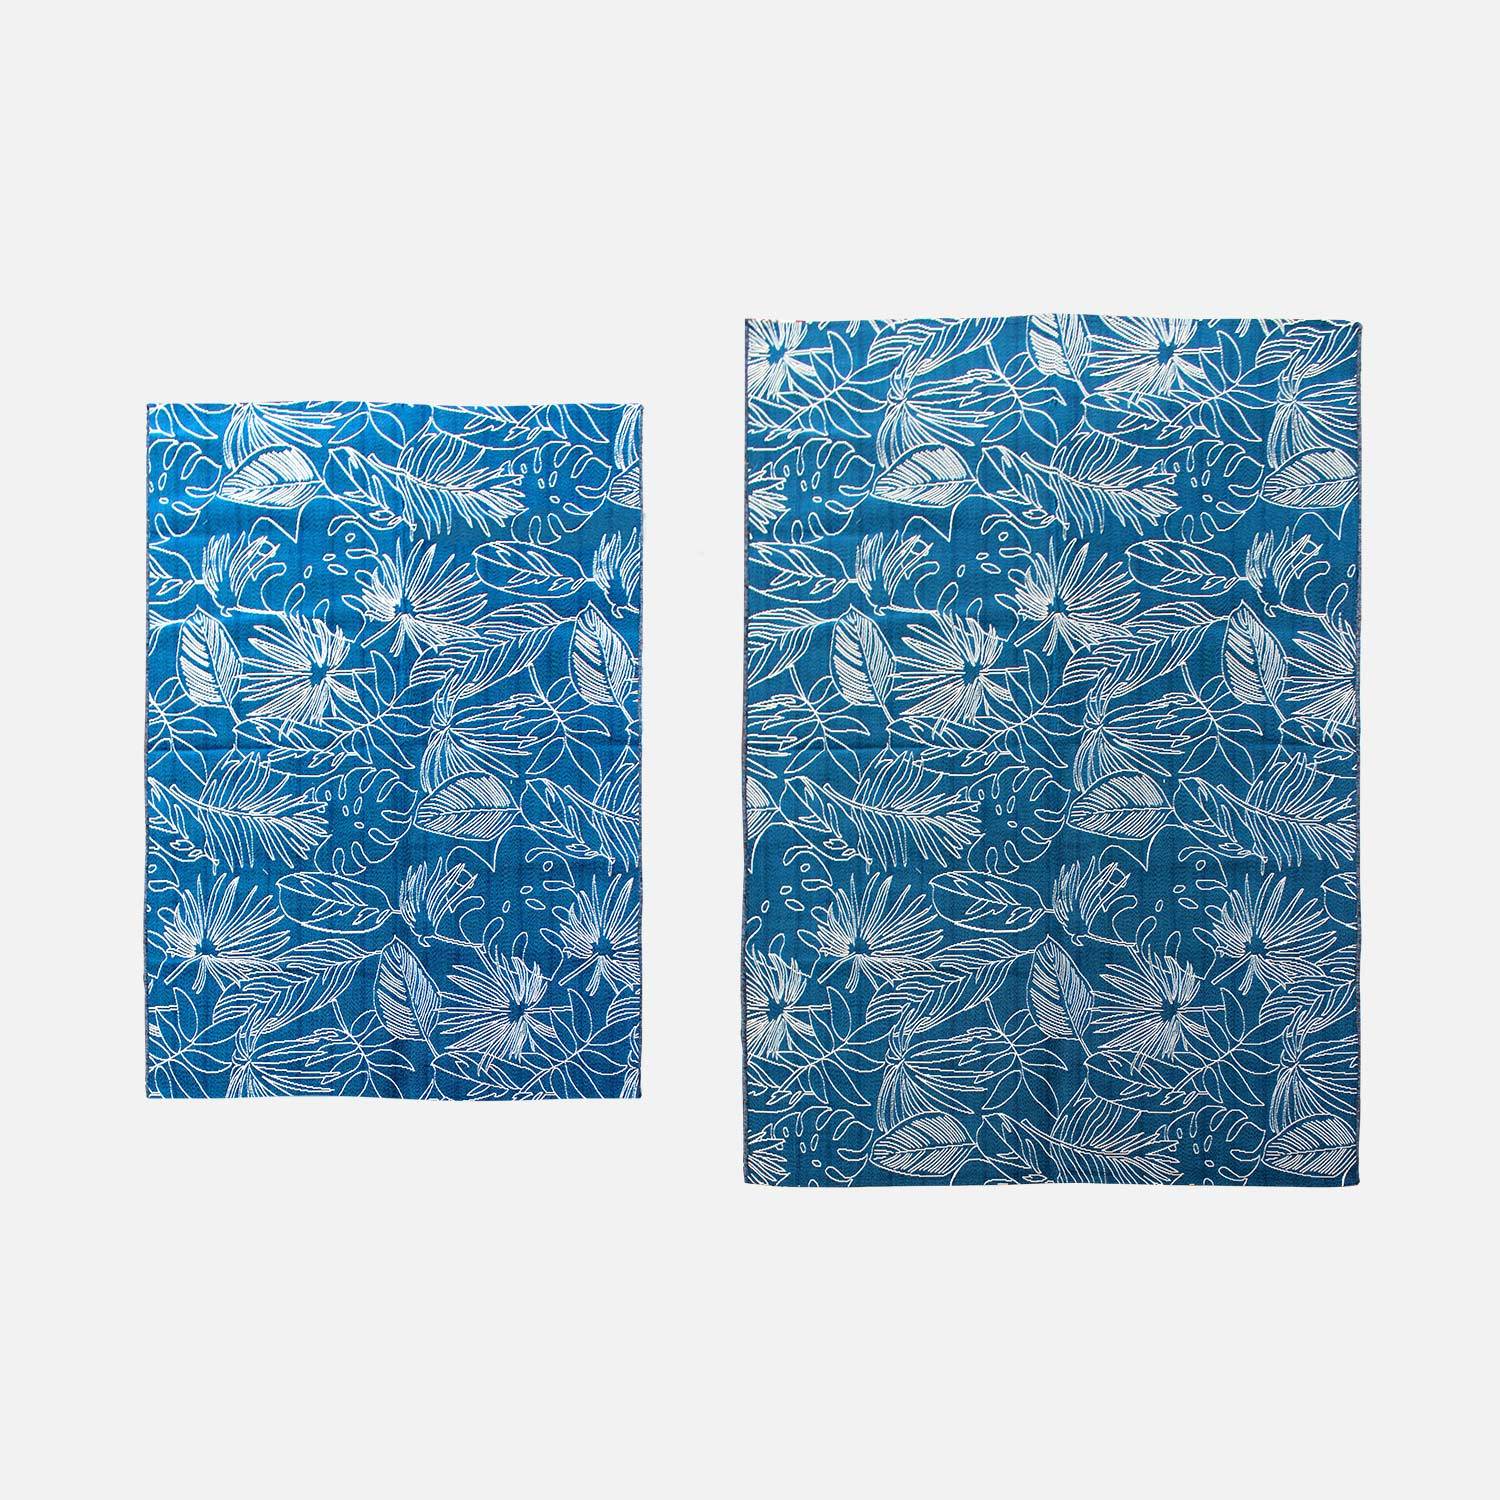 Teppich Outdoor/indoor 160 x 230 cm, Dichte 1,15 kg/m2, Entenblau mit exotischem Muster in Weiß, UV-behandelt, 4-Jahreszeiten Photo3